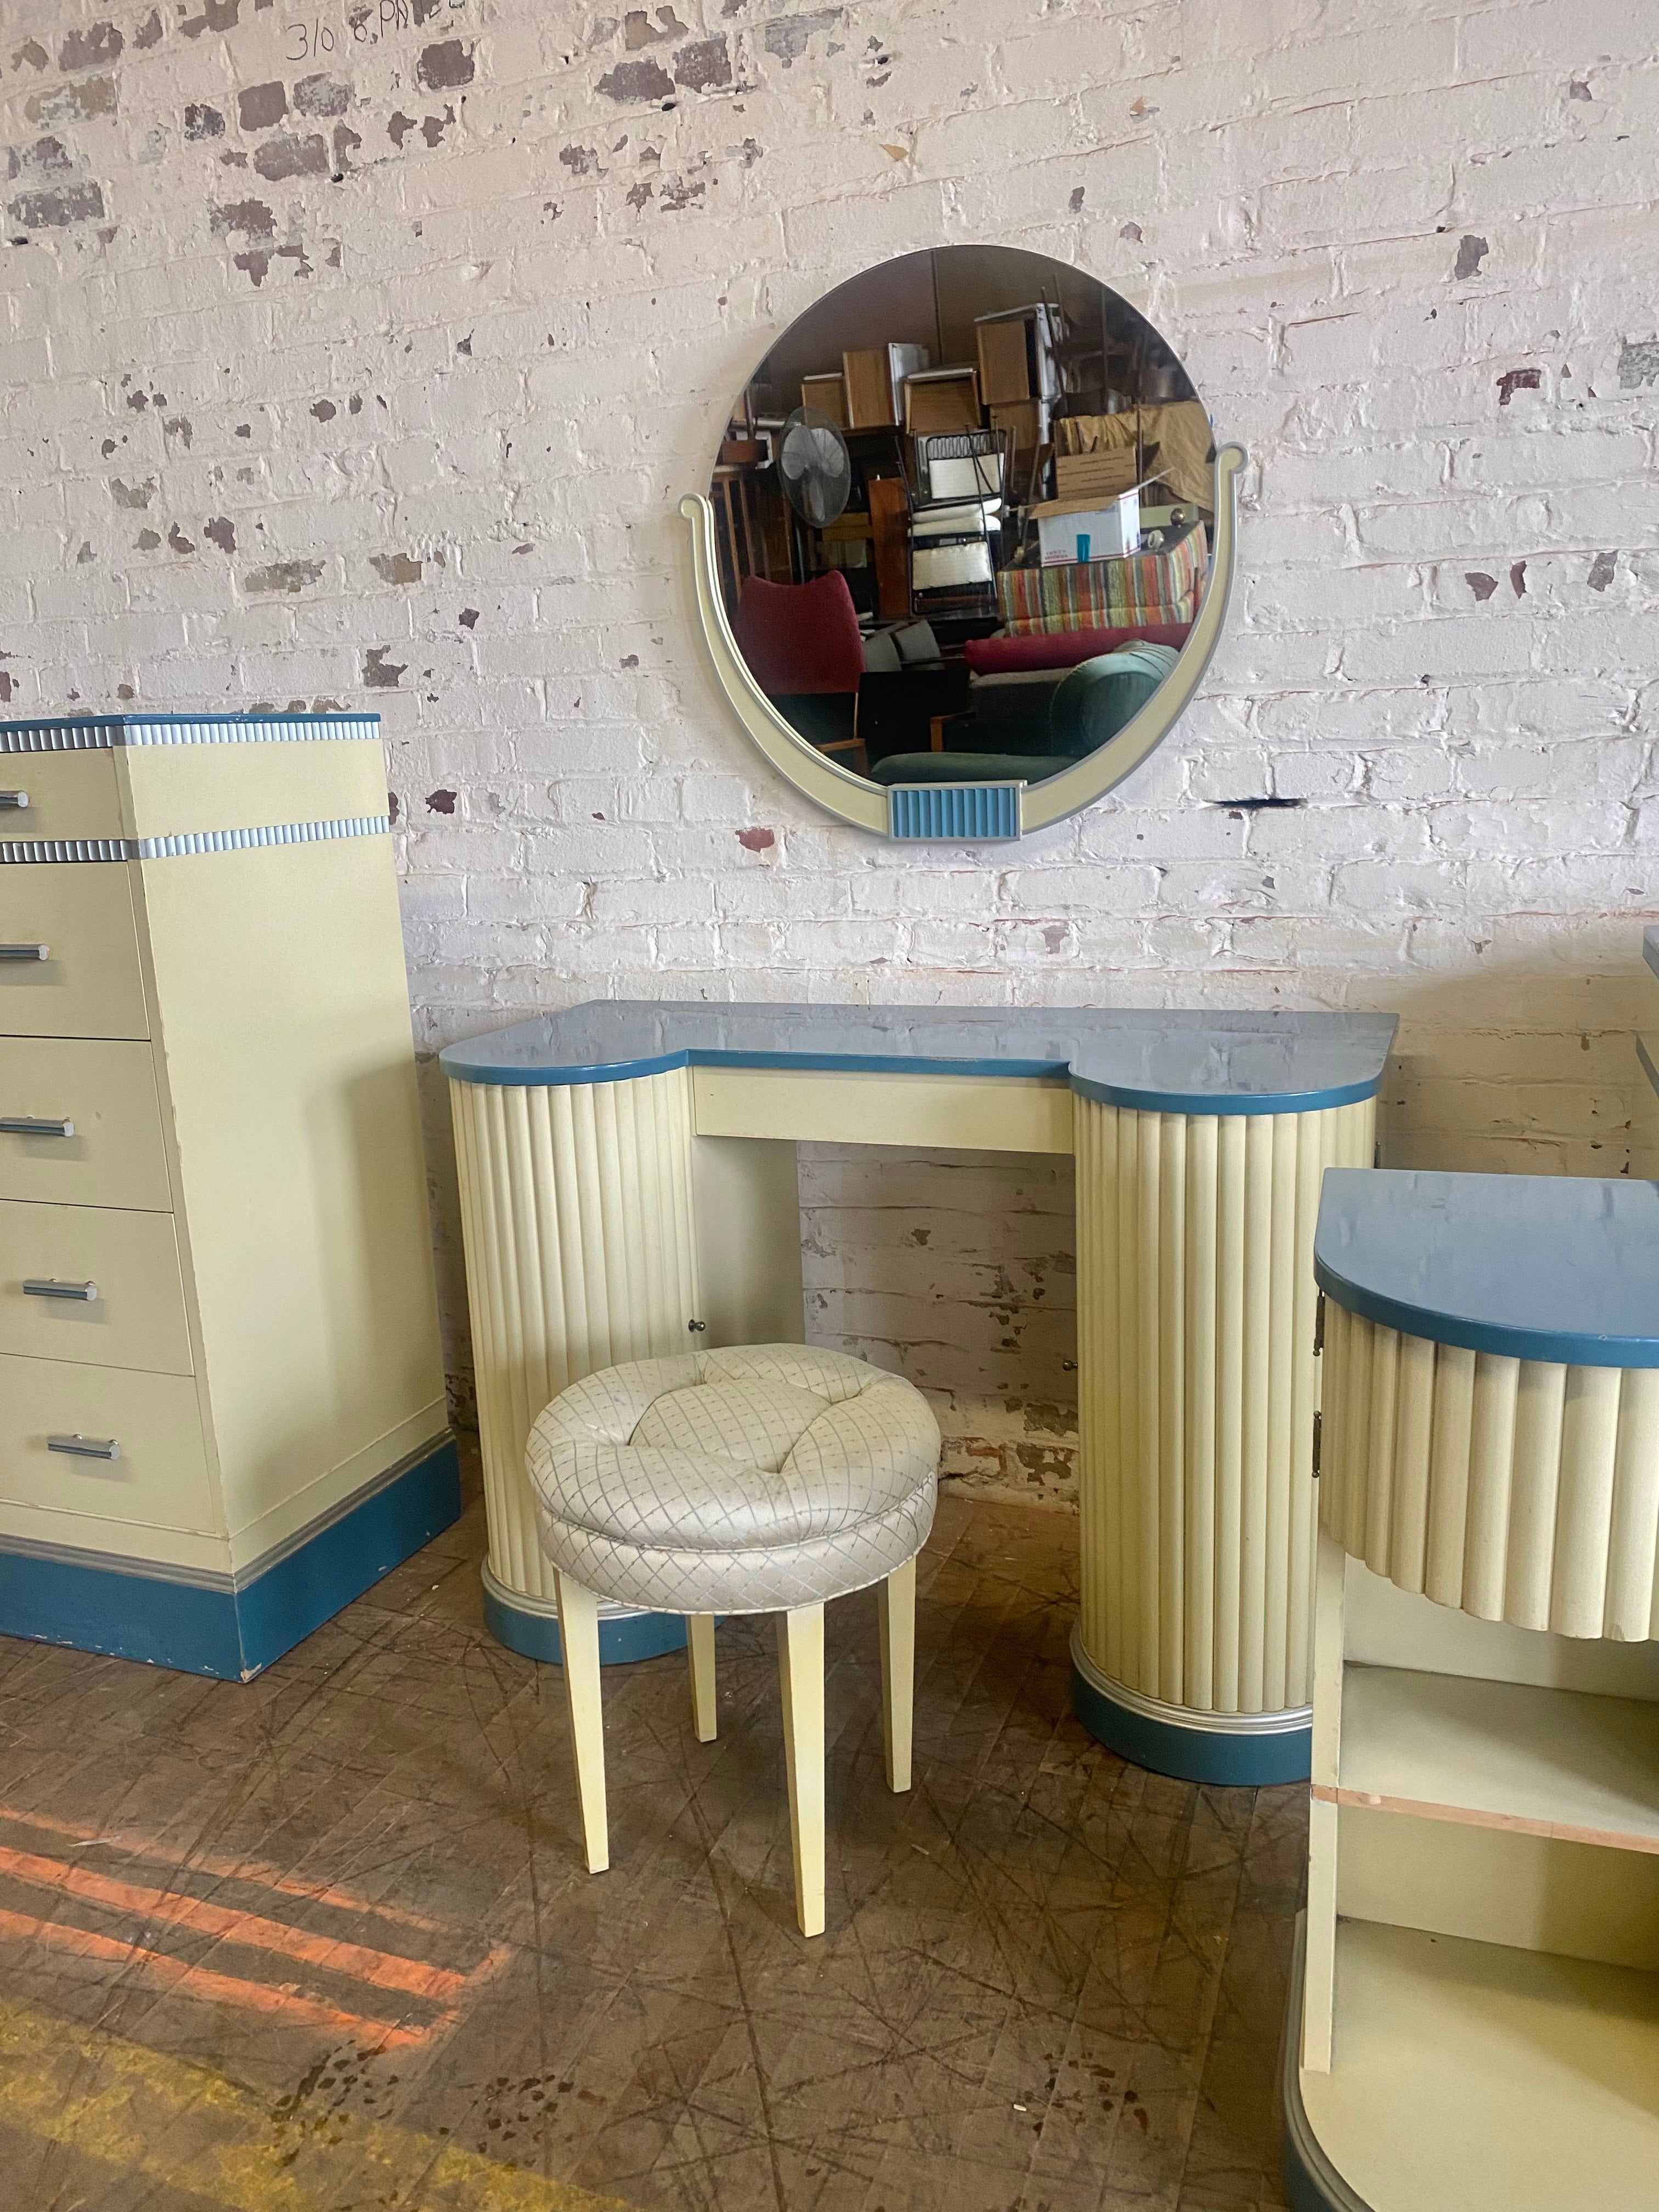 Superbe suite de chambre à coucher Art déco fabriquée par Kittinger Furniture Co. Buffalo New York. Introduite en 1934, c'est la ligne Doric. High Style Deco, laqué bicolore crème et bleu. Ensemble complet très rare et inhabituel à trouver.